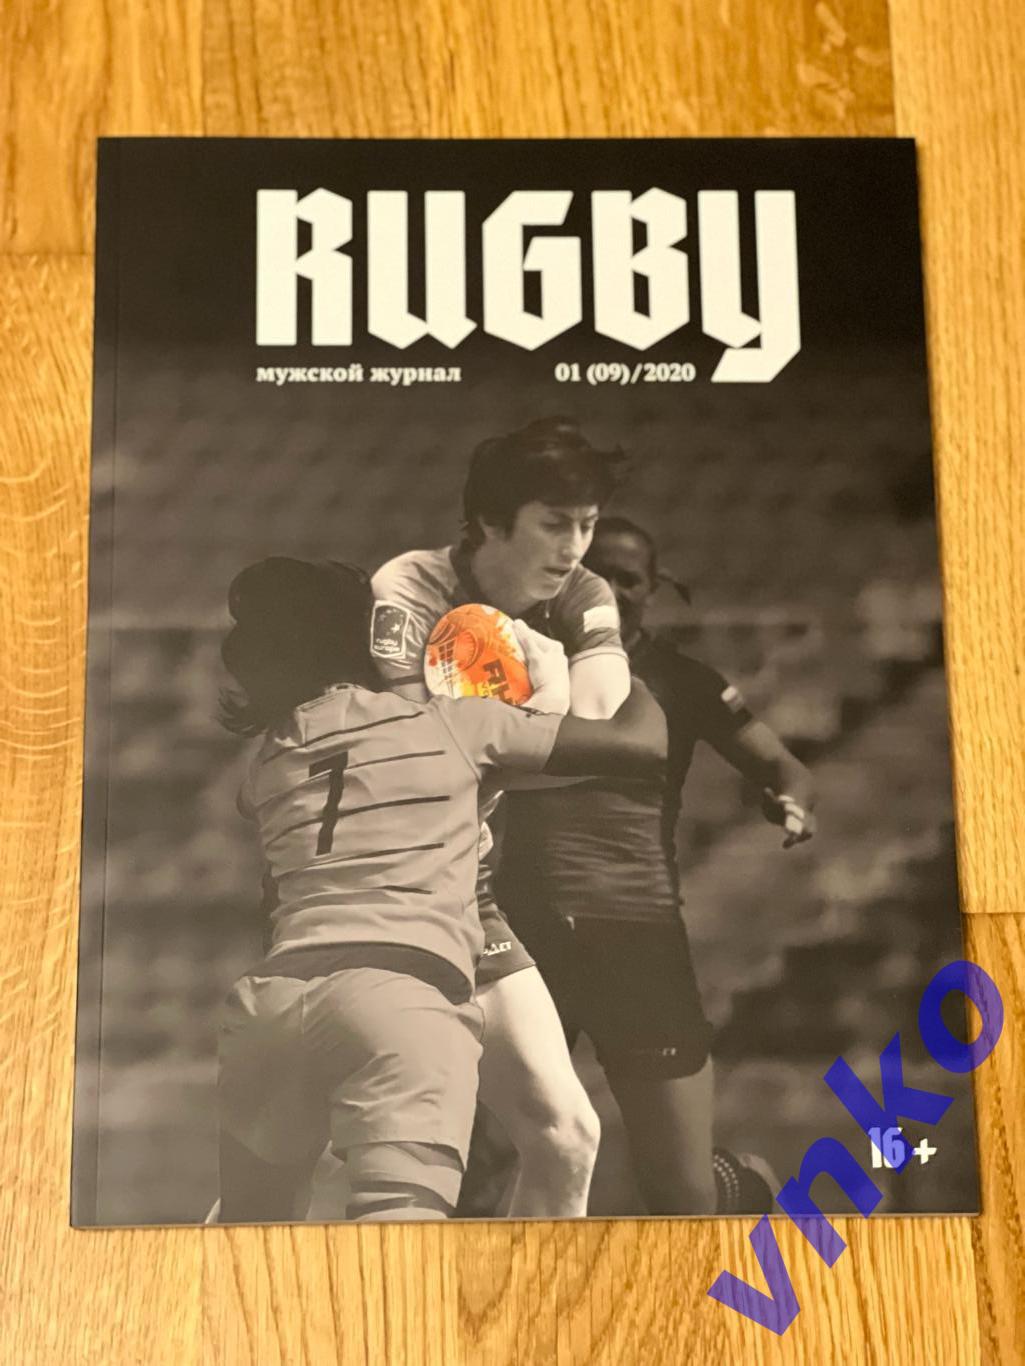 Мужской журнал Rugby Регби #1(9) - 2020. Обложка - Байзат Хамитова, Енисей-СТМ